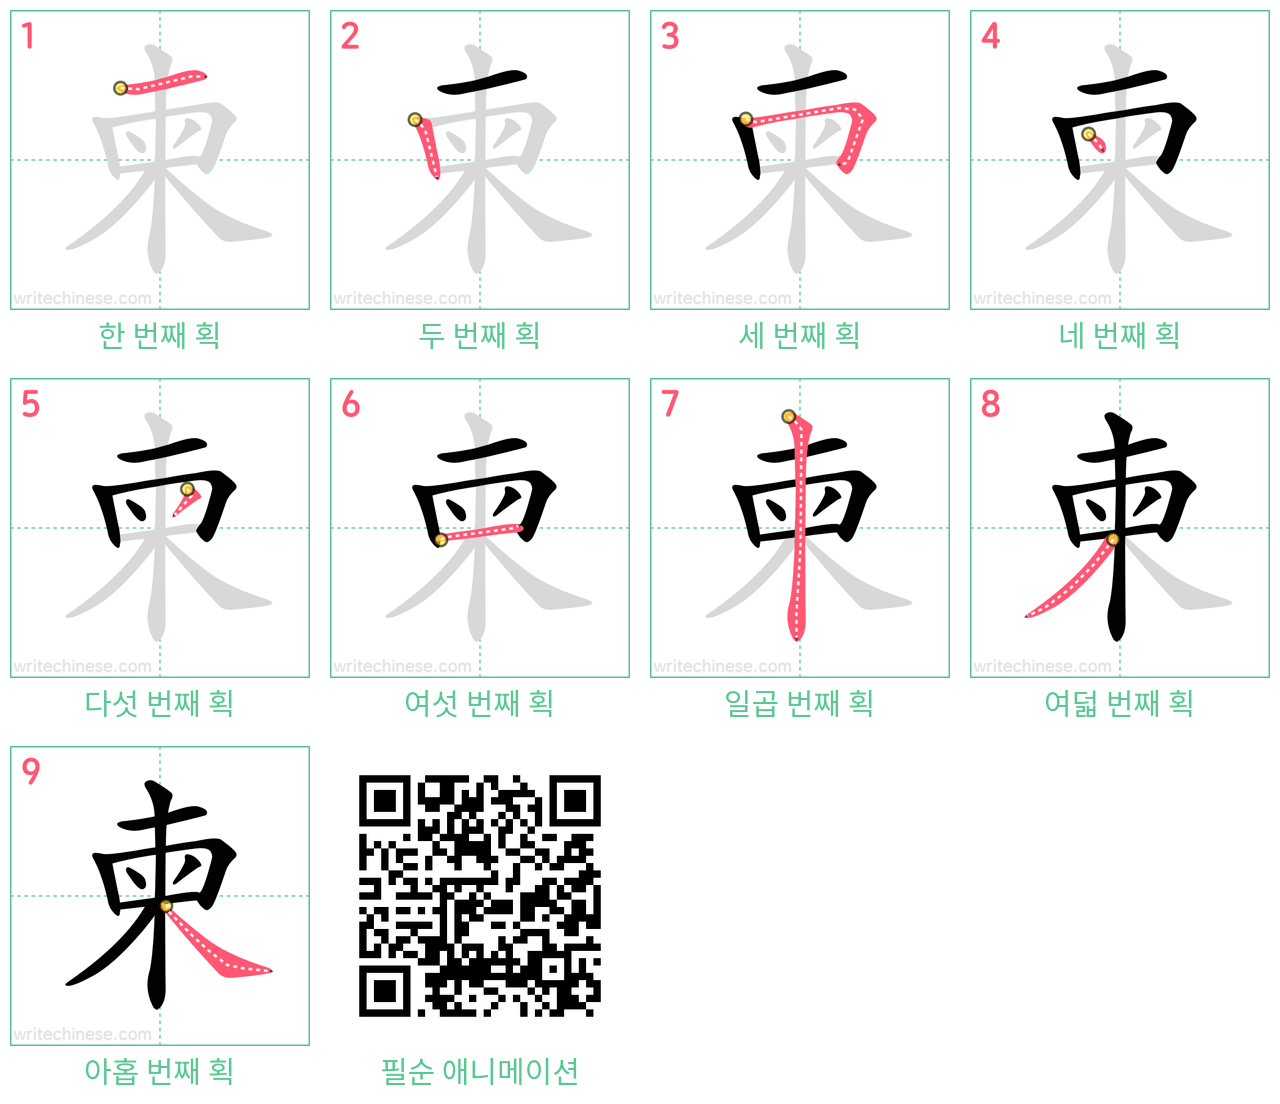 柬 step-by-step stroke order diagrams